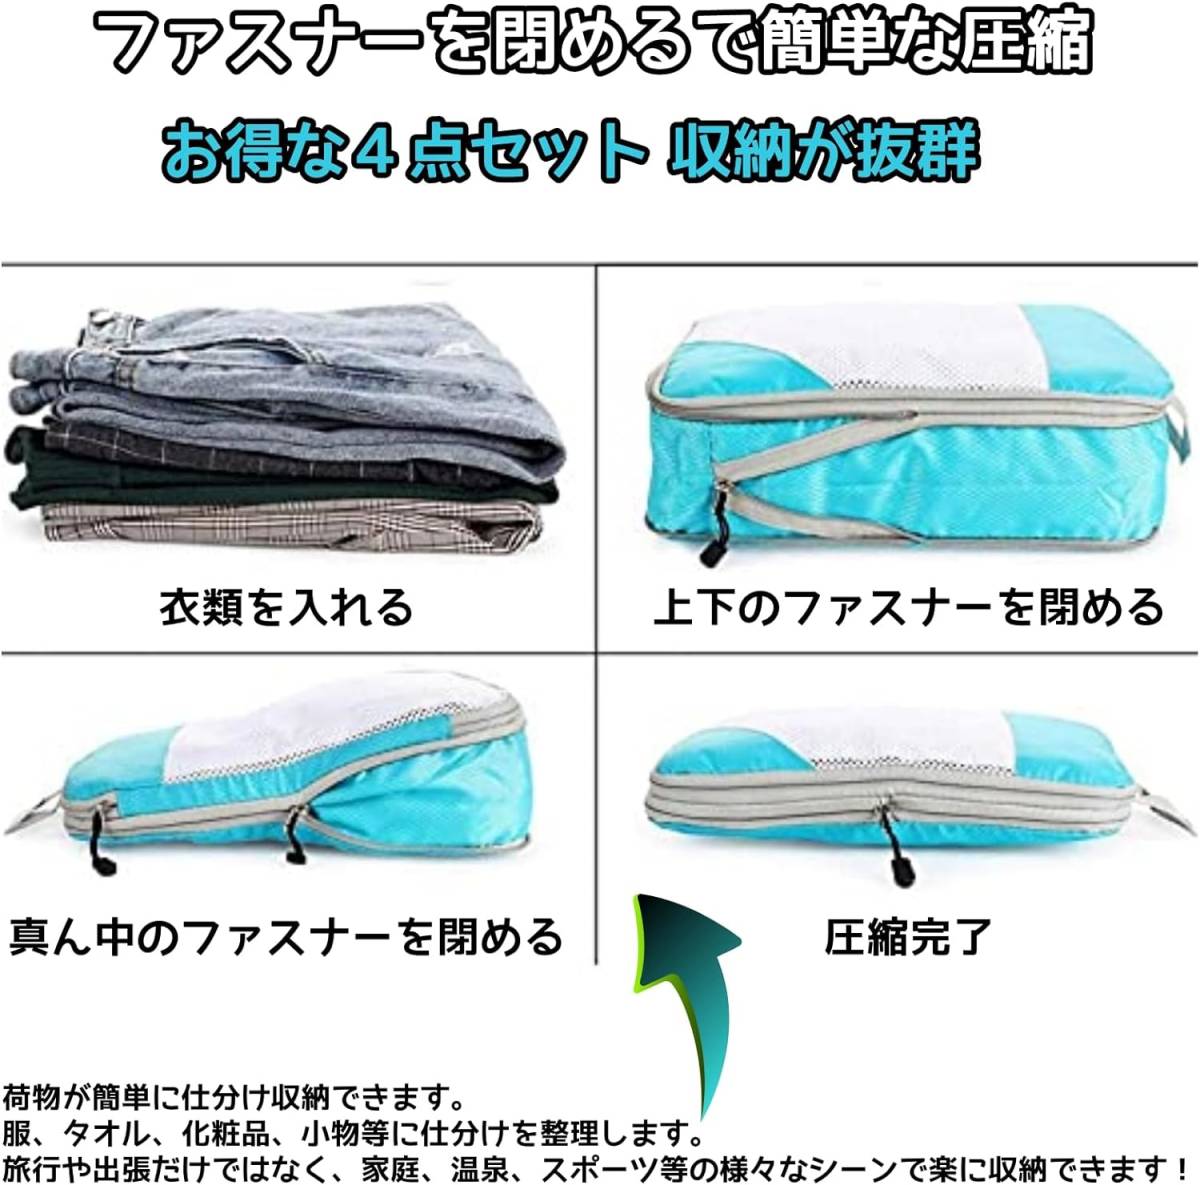 トラベルポーチ 4点セット ファスナー 圧縮袋 出張 旅行用 圧縮バッグ 衣類整理 (ブルー)_画像4